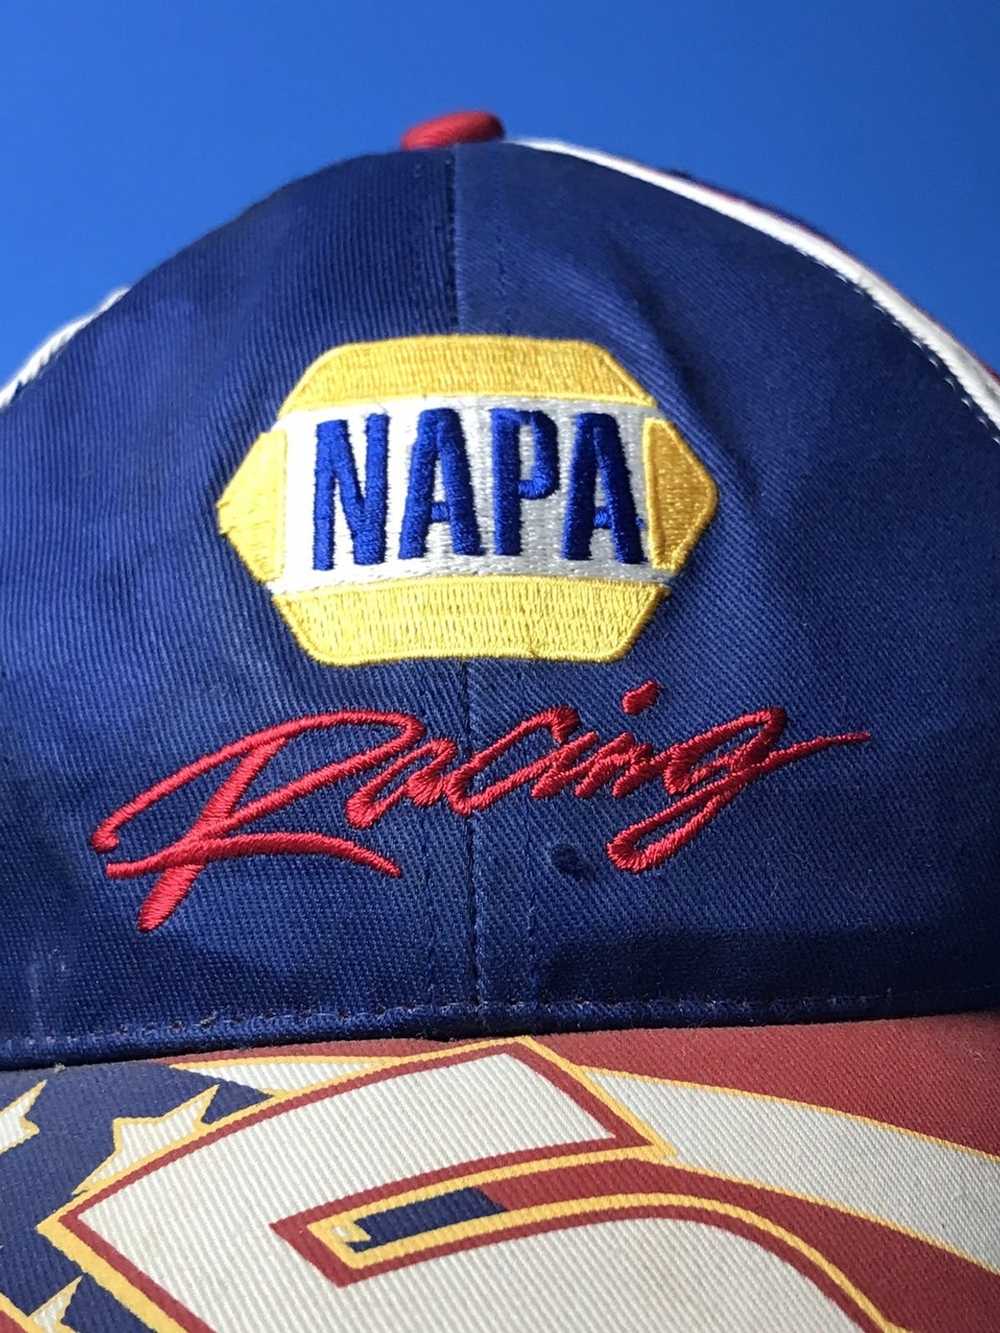 Vintage Vintage Napa Racing 15 Hat - image 2